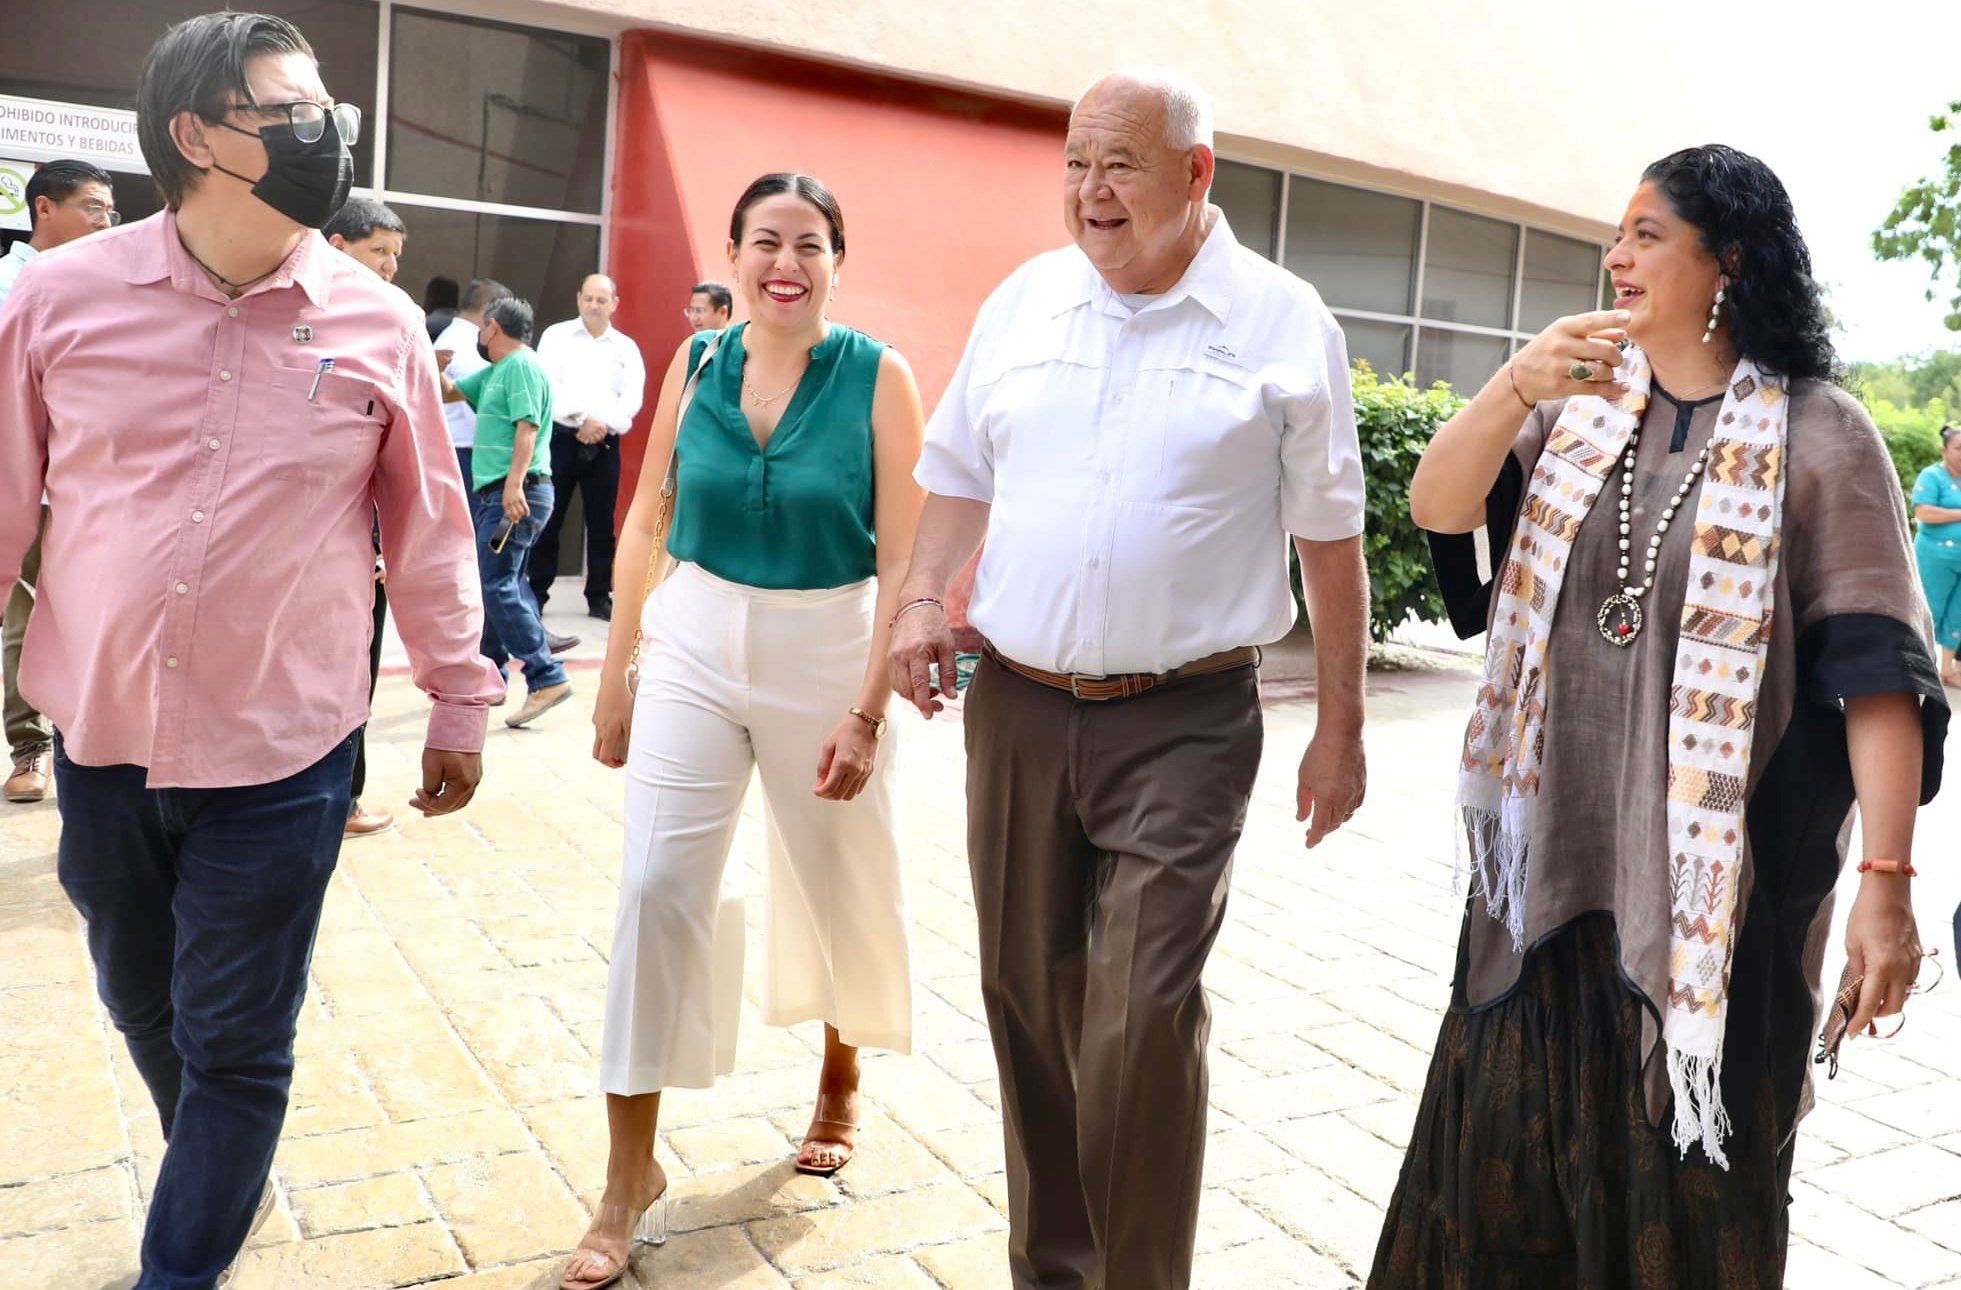 “Estamos acercando la cultura a través del Programa Impulso en La Paz”: Alcaldesa